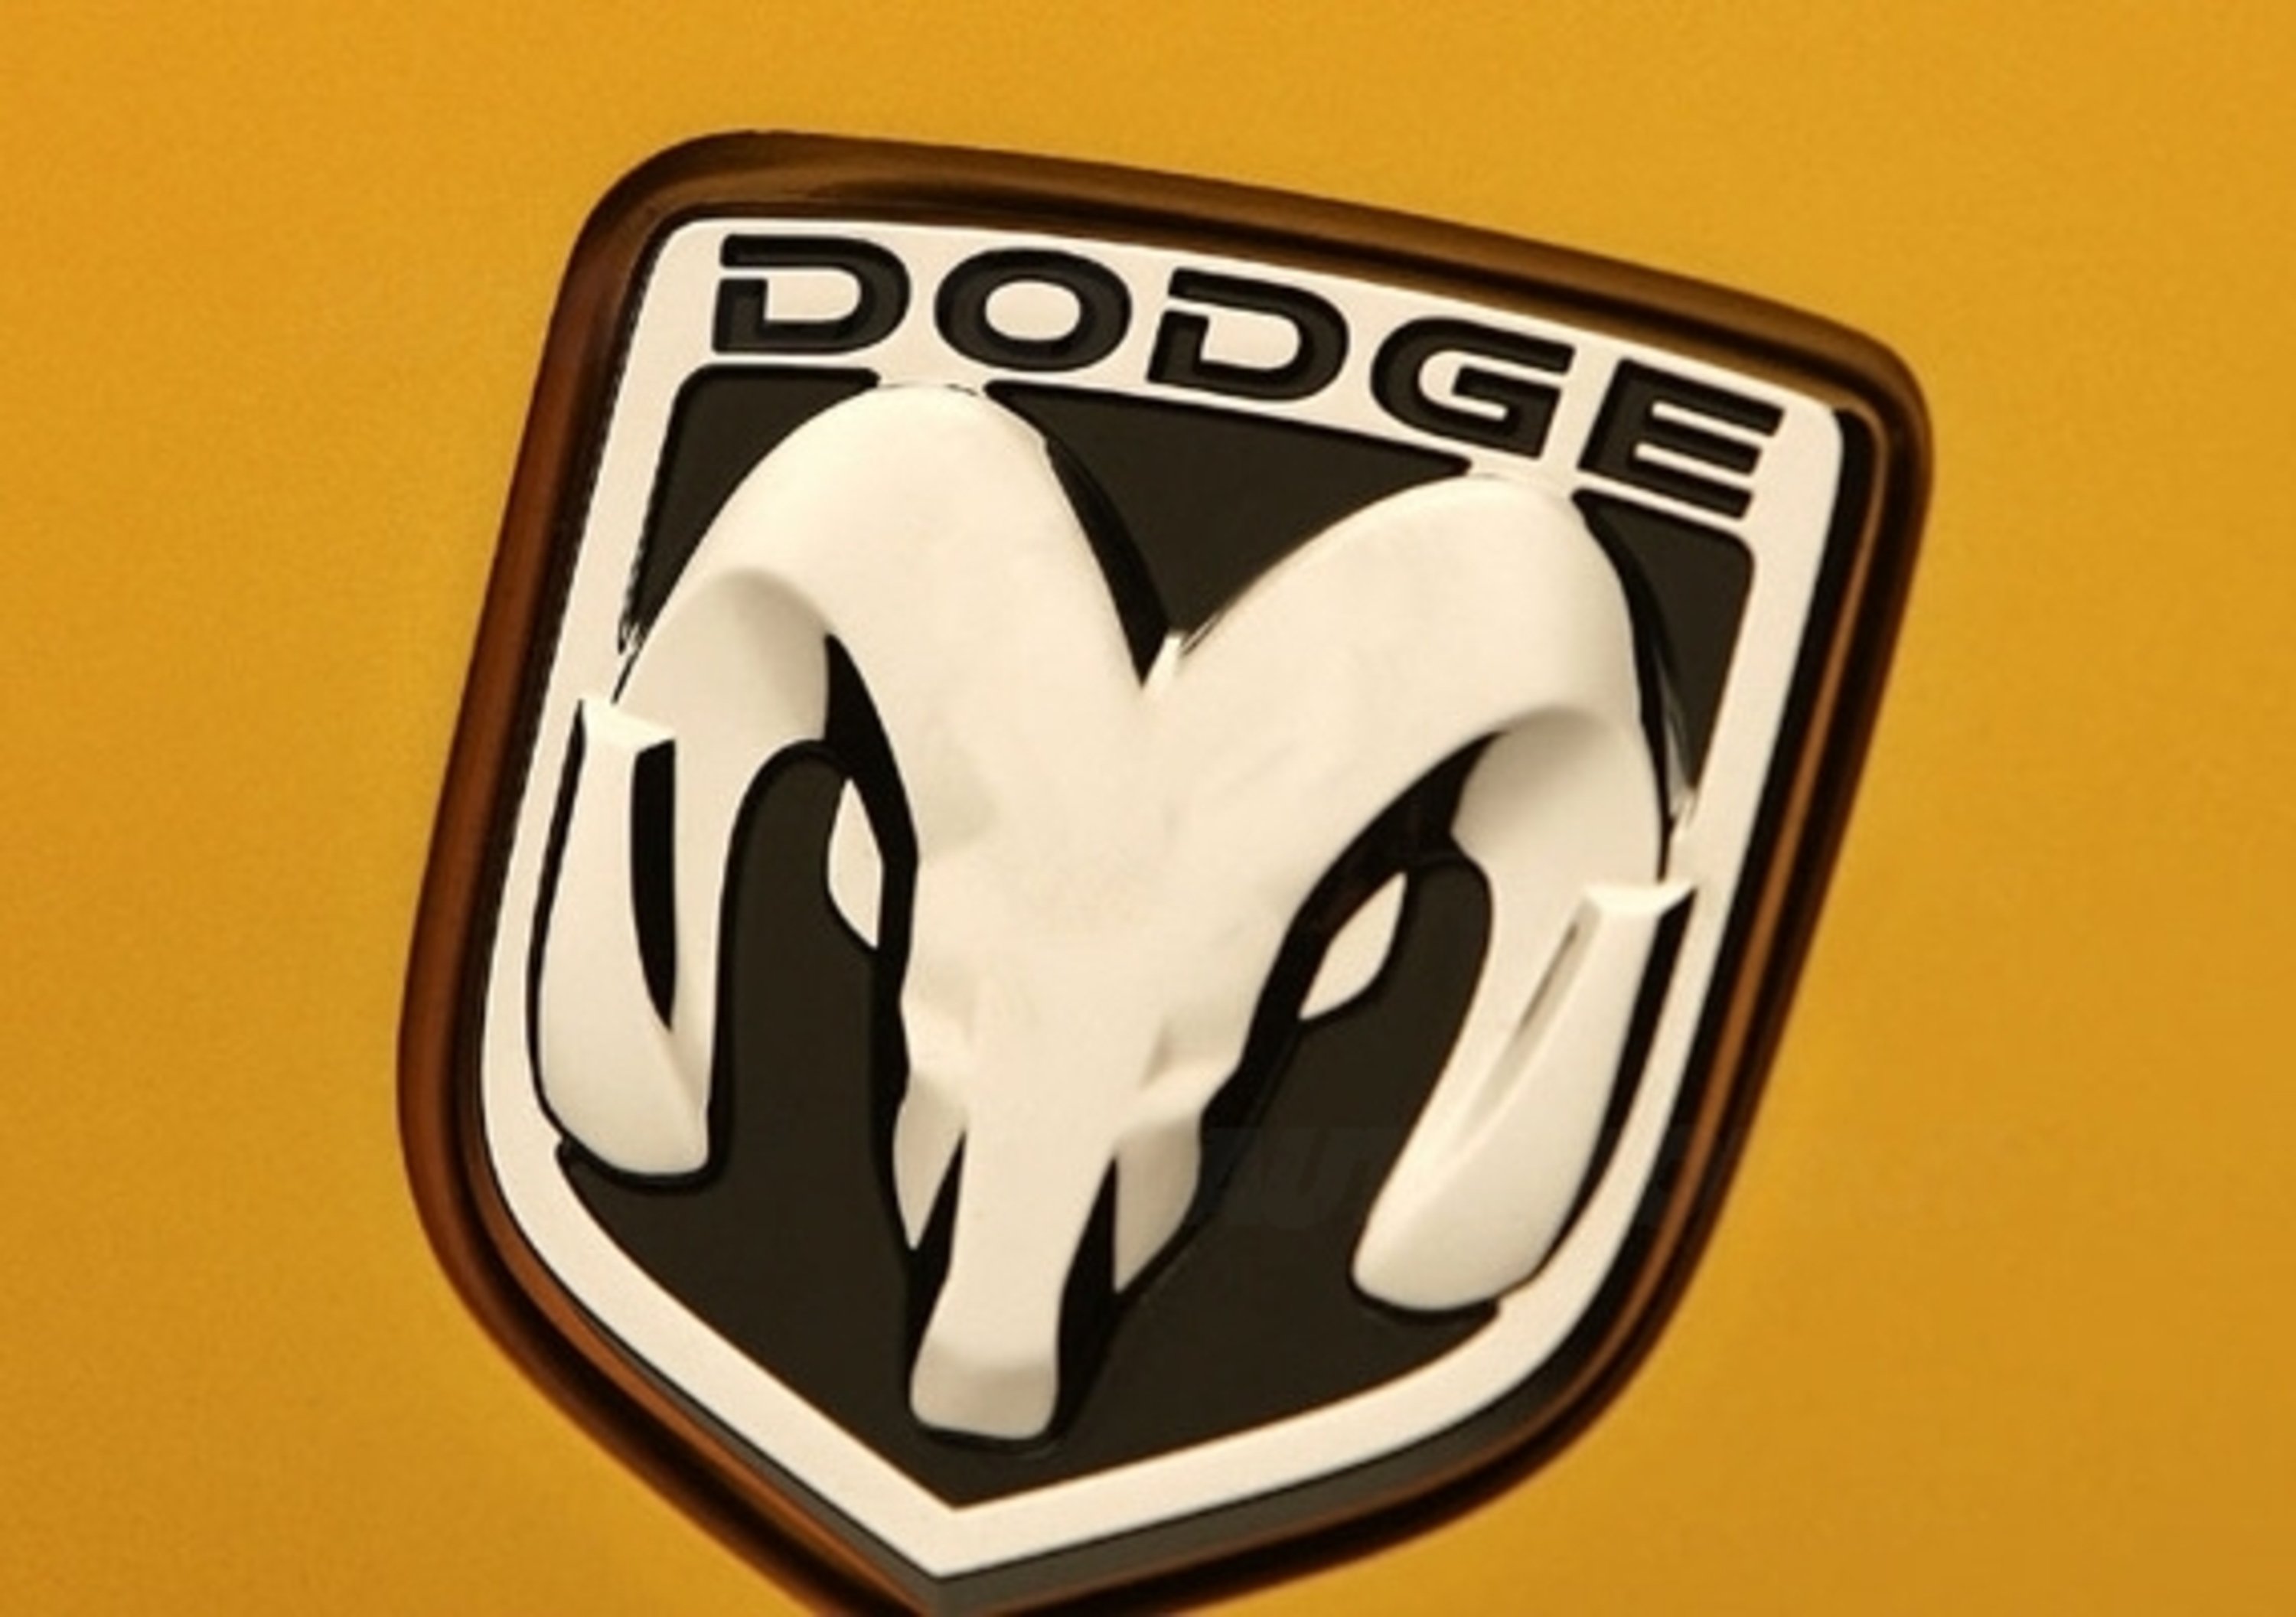 Dodge Demon Concept